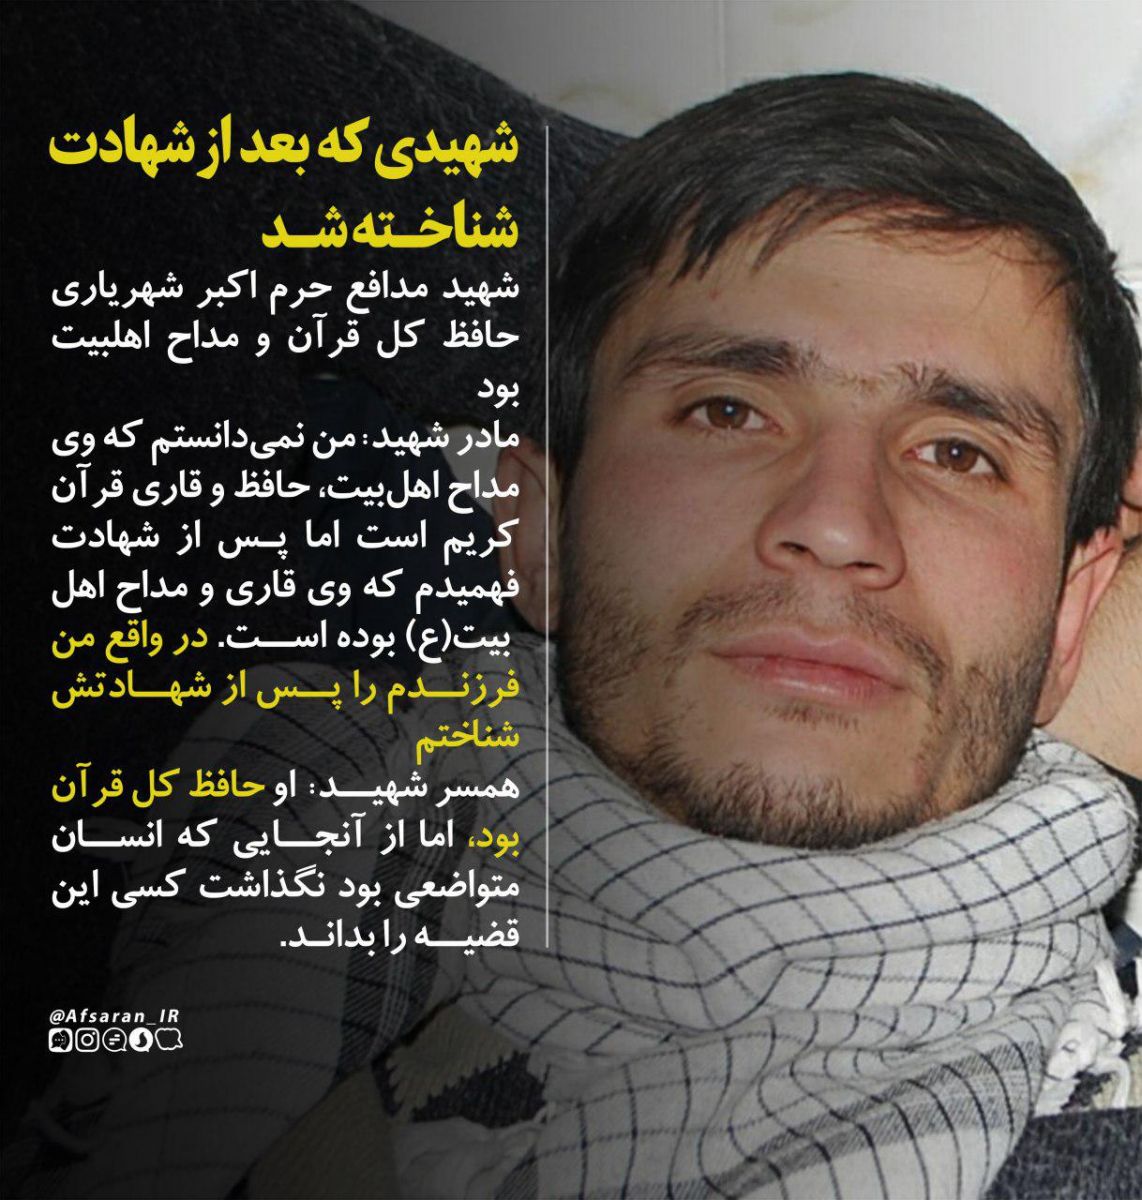 مدافع حرمی که بعد از شهادتش شناخته شد + عکس